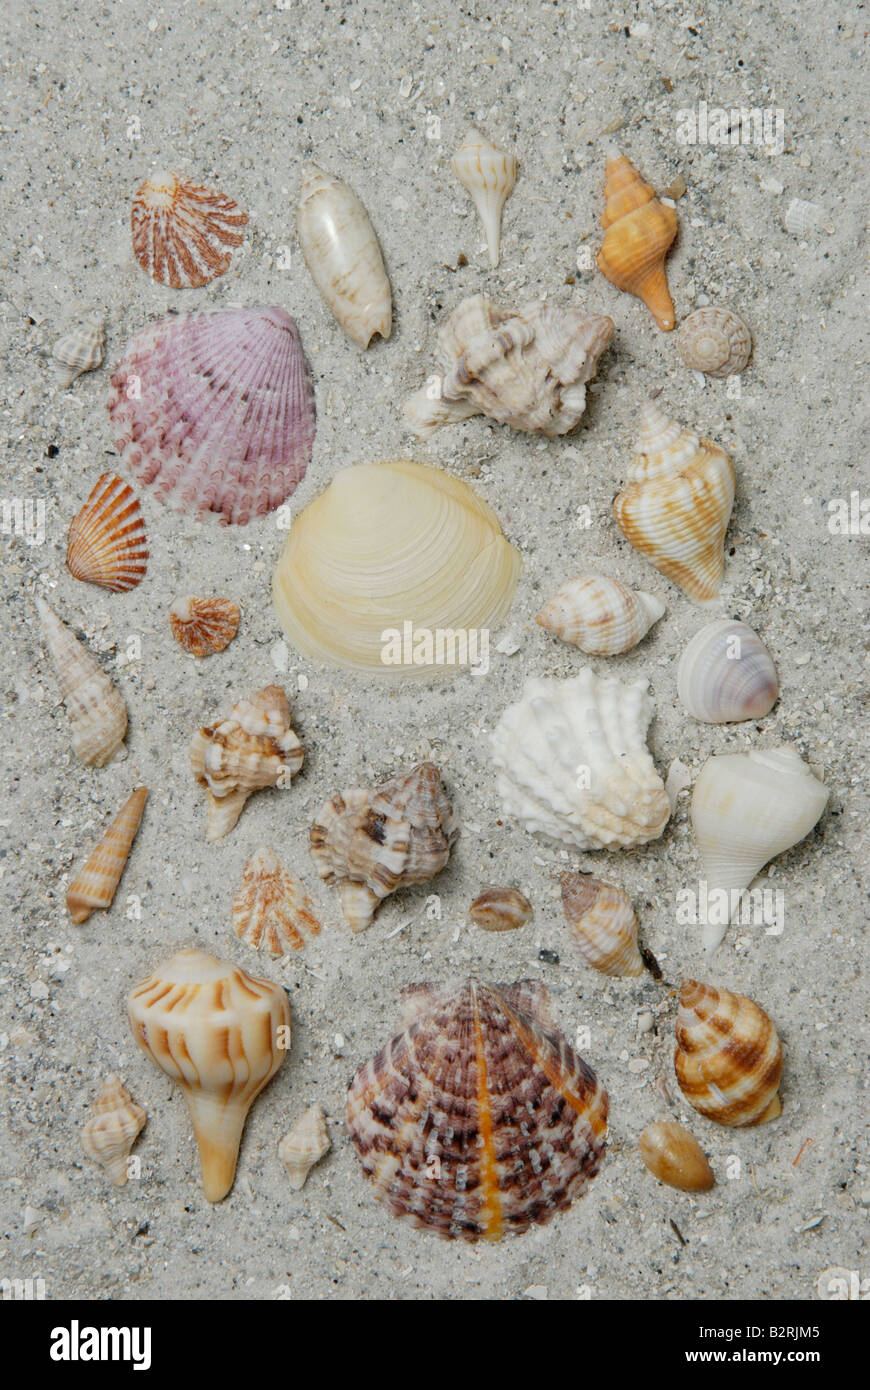 Une variété de coquilles de mollusques recueillis à partir de la côte du golfe de Floride Sanibel Island Banque D'Images